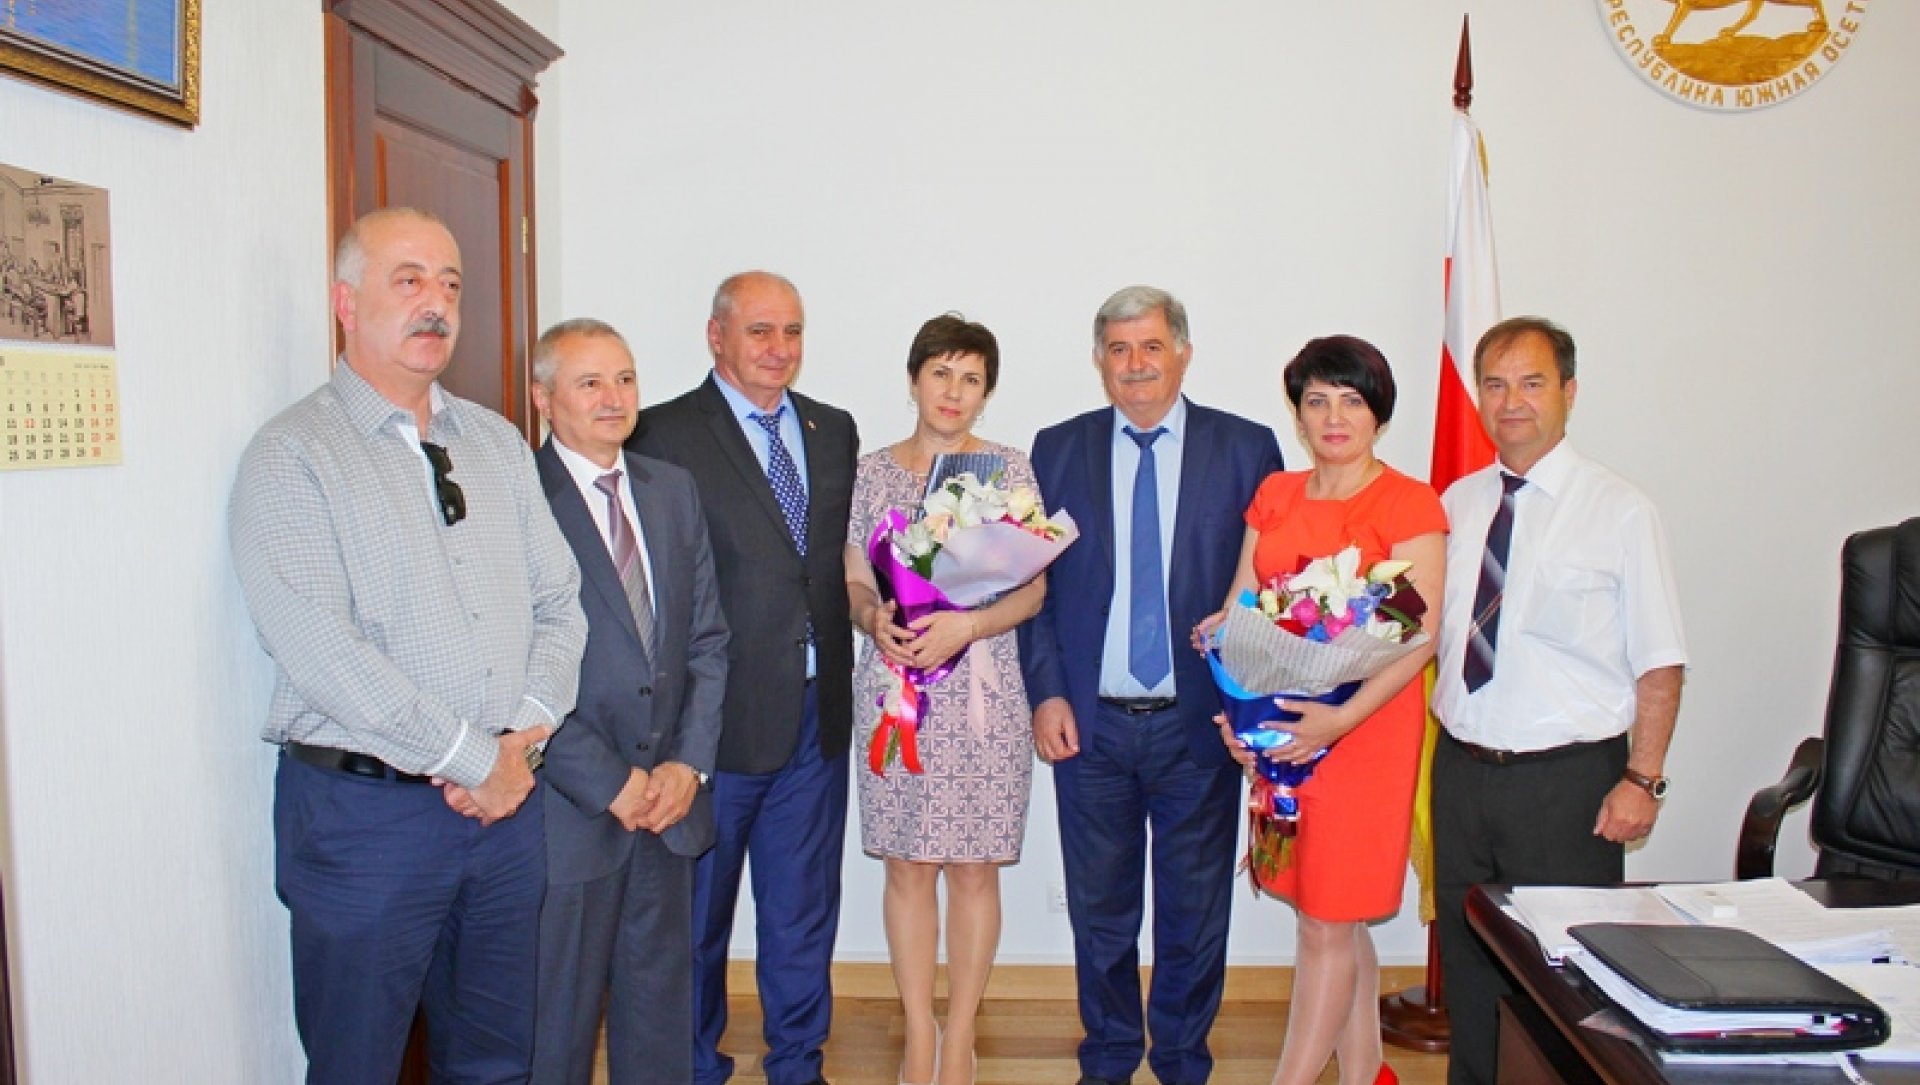 Эрик Пухаев: «Сотрудничество с Луганской Народной Республикой имеет хорошую перспективу развития»